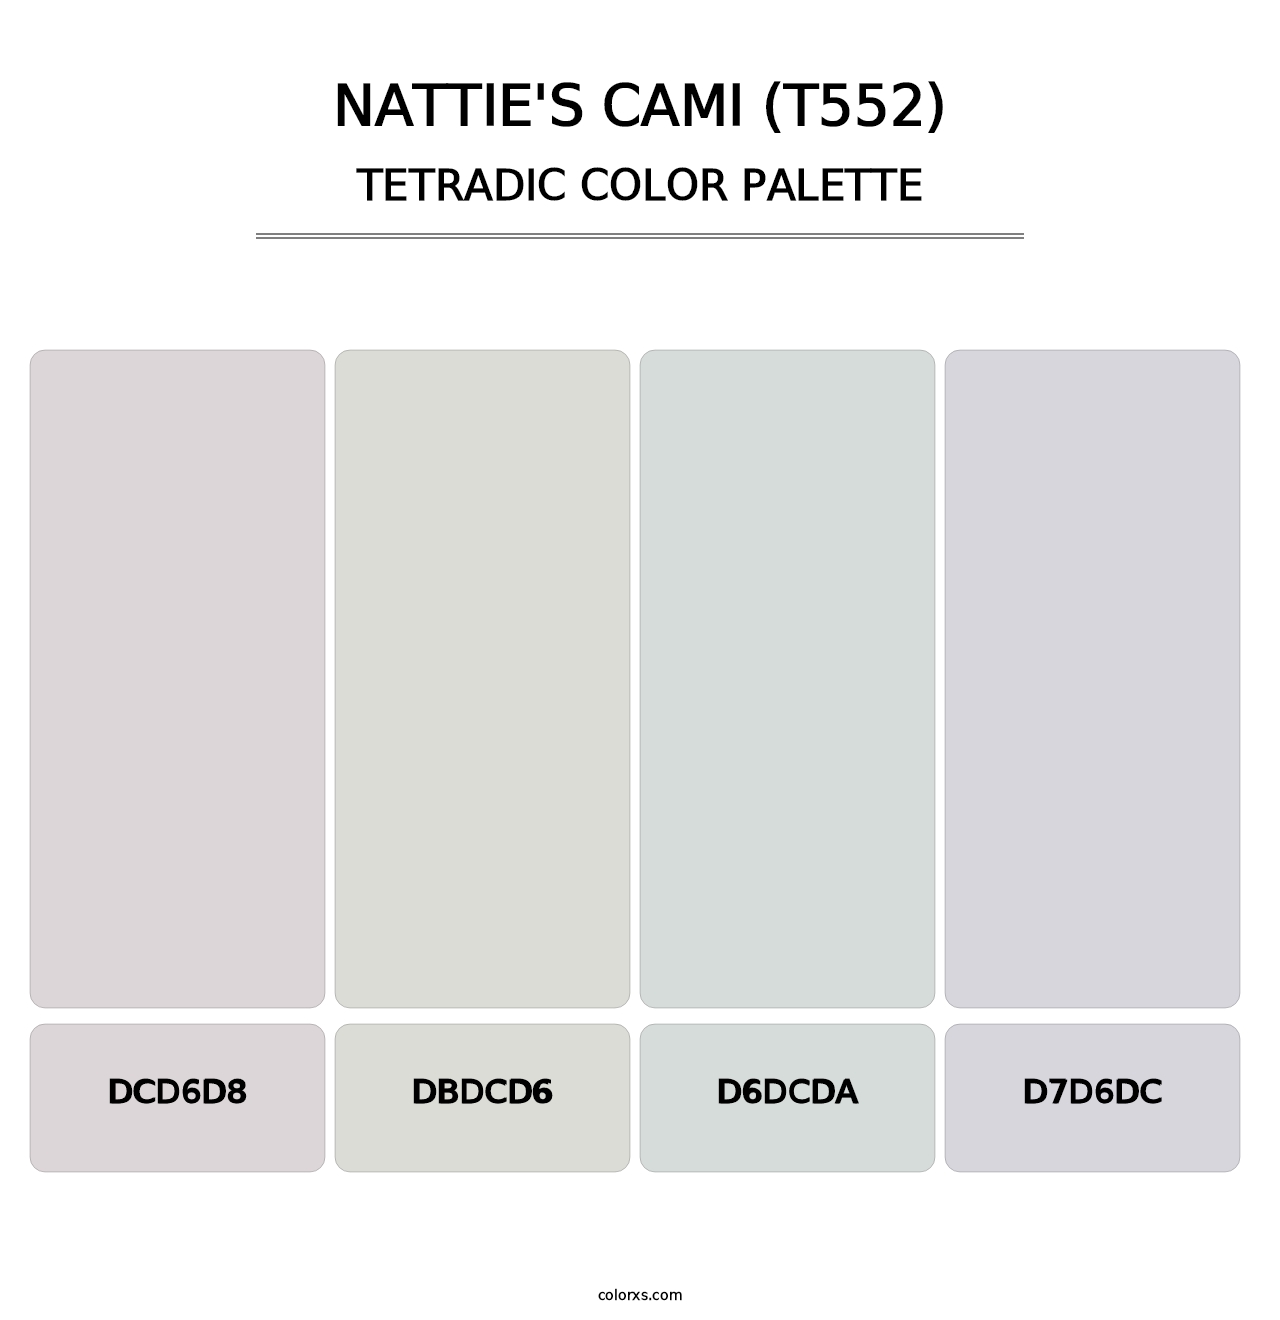 Nattie's Cami (T552) - Tetradic Color Palette